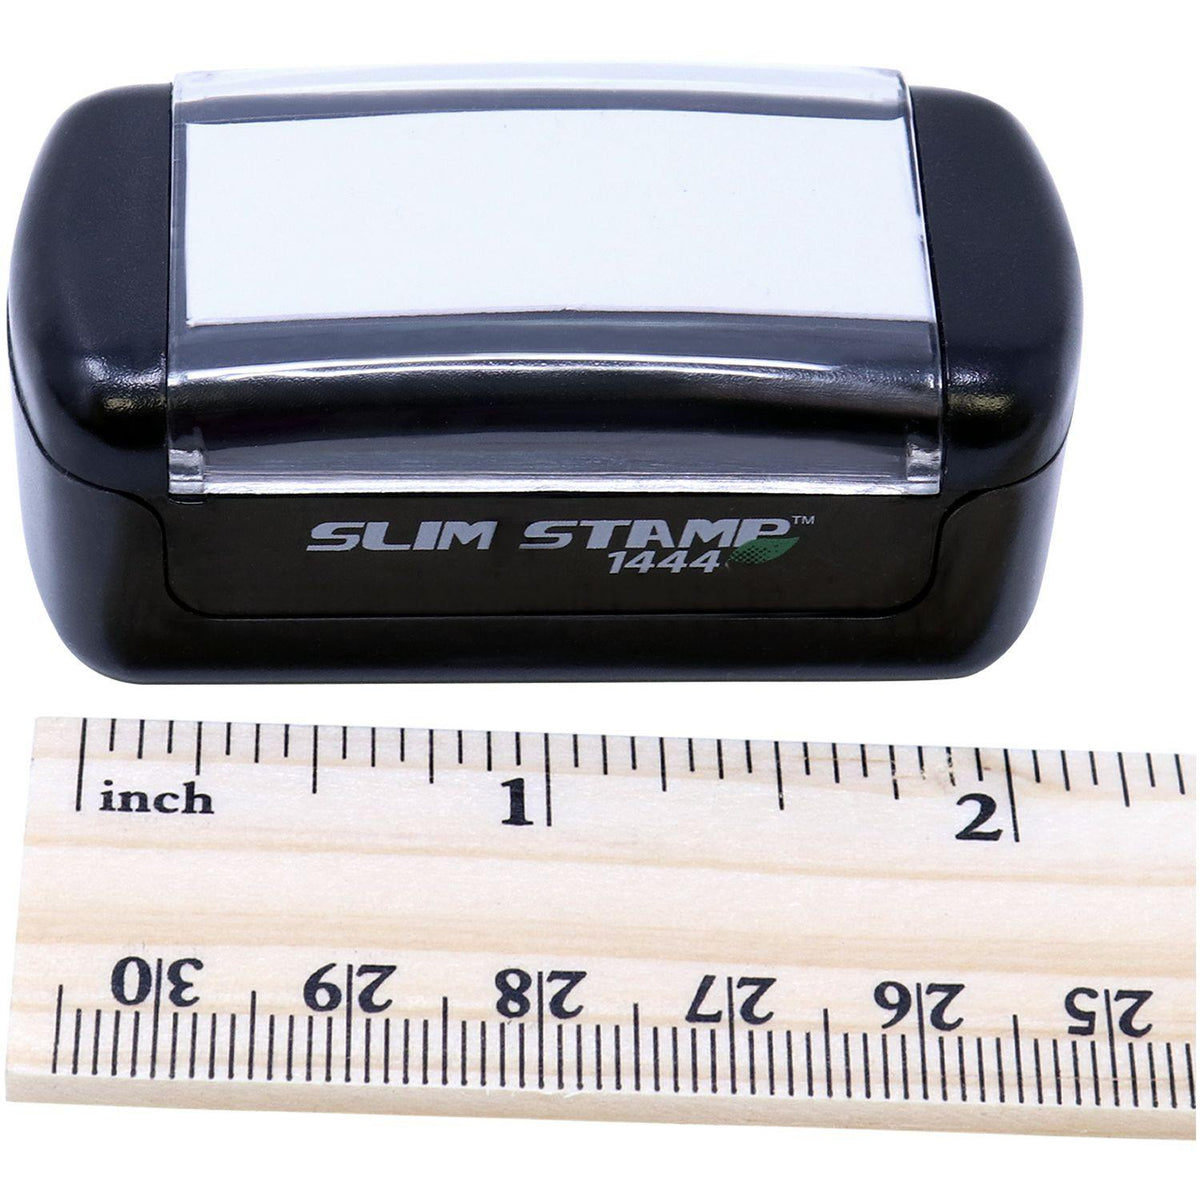 Measurement Slim Pre-Inked Self-Quarantine Stamp with Ruler